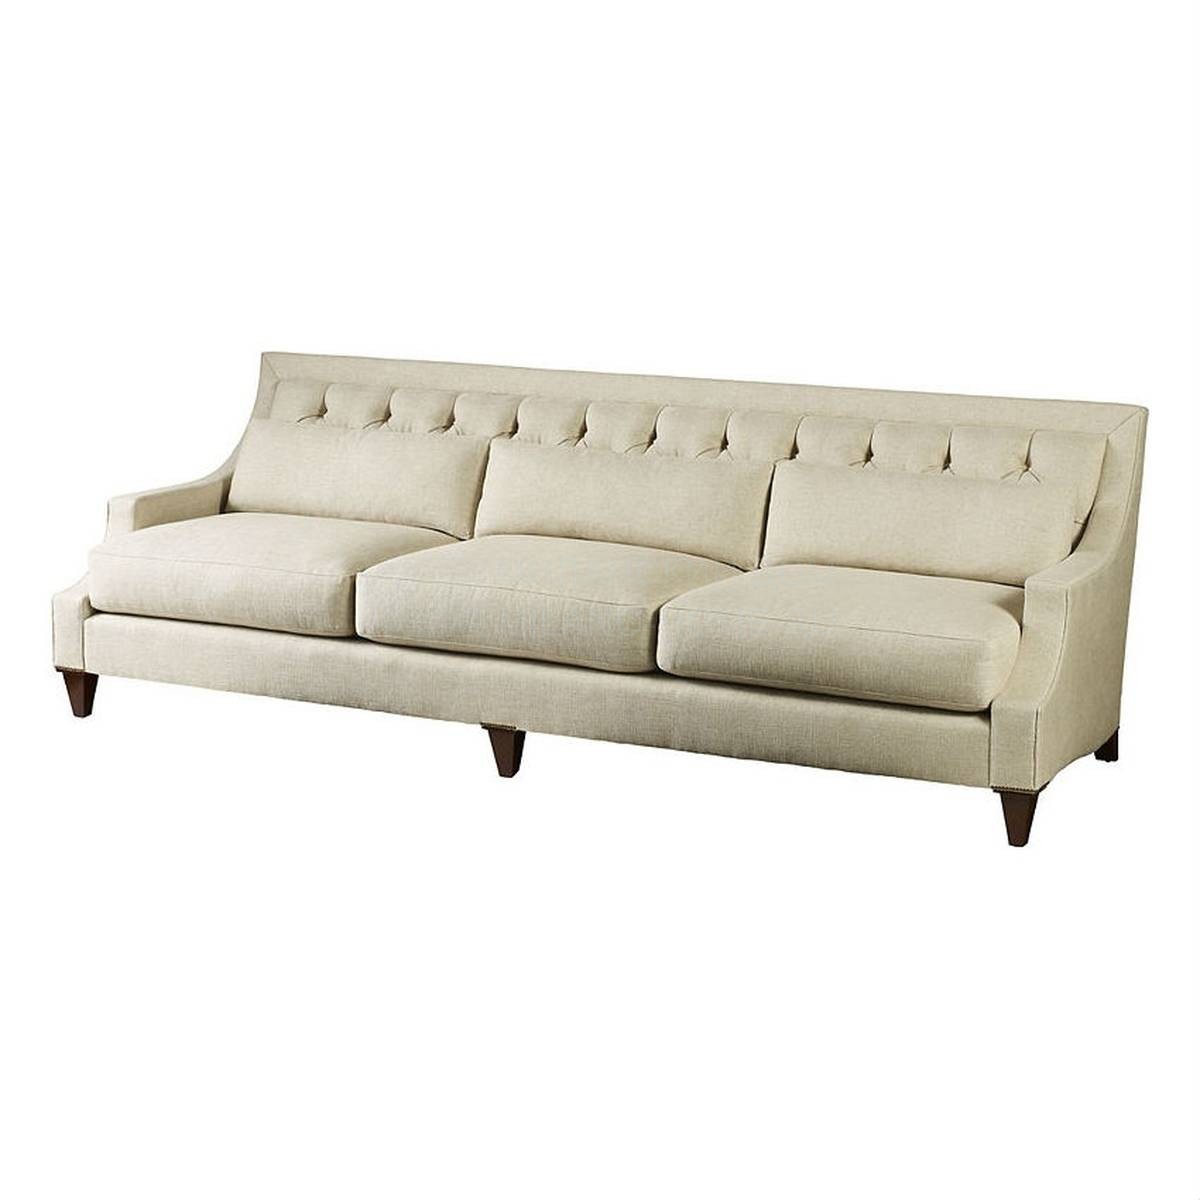 Прямой диван Max sofa из США фабрики BAKER